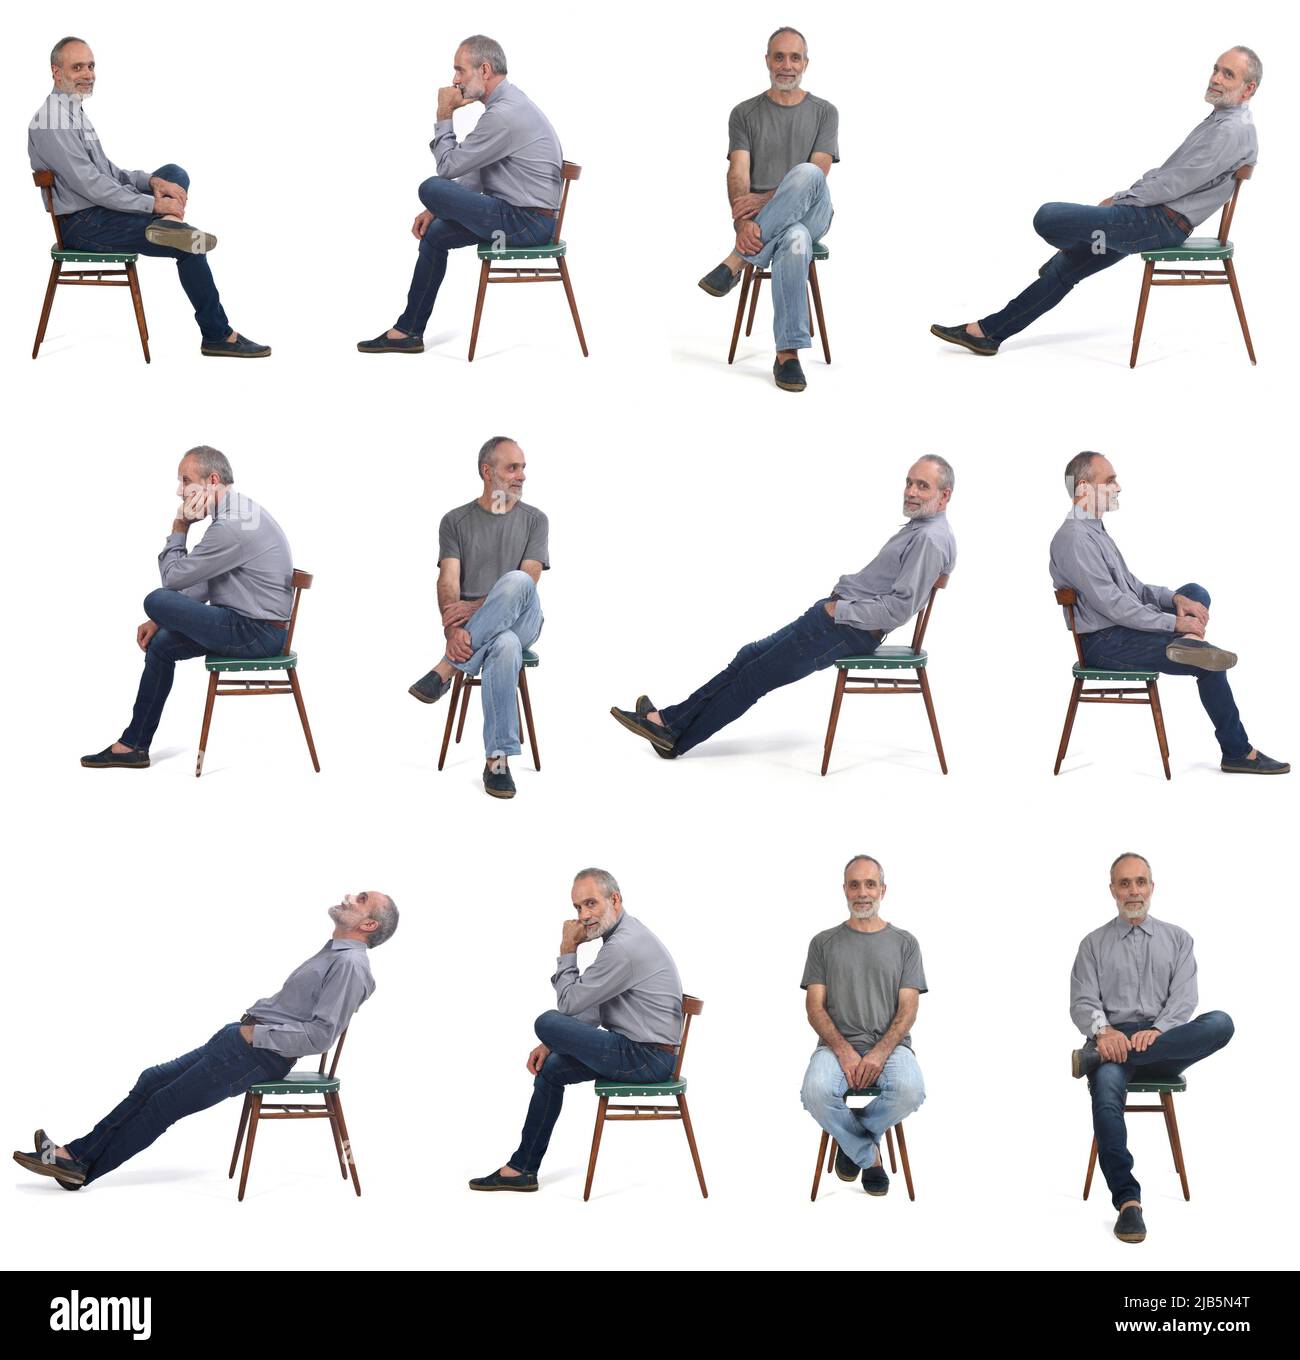 Verschiedene Posen des gleichen Mannes, der auf einem Stuhl auf weißem Hintergrund sitzt. Stockfoto